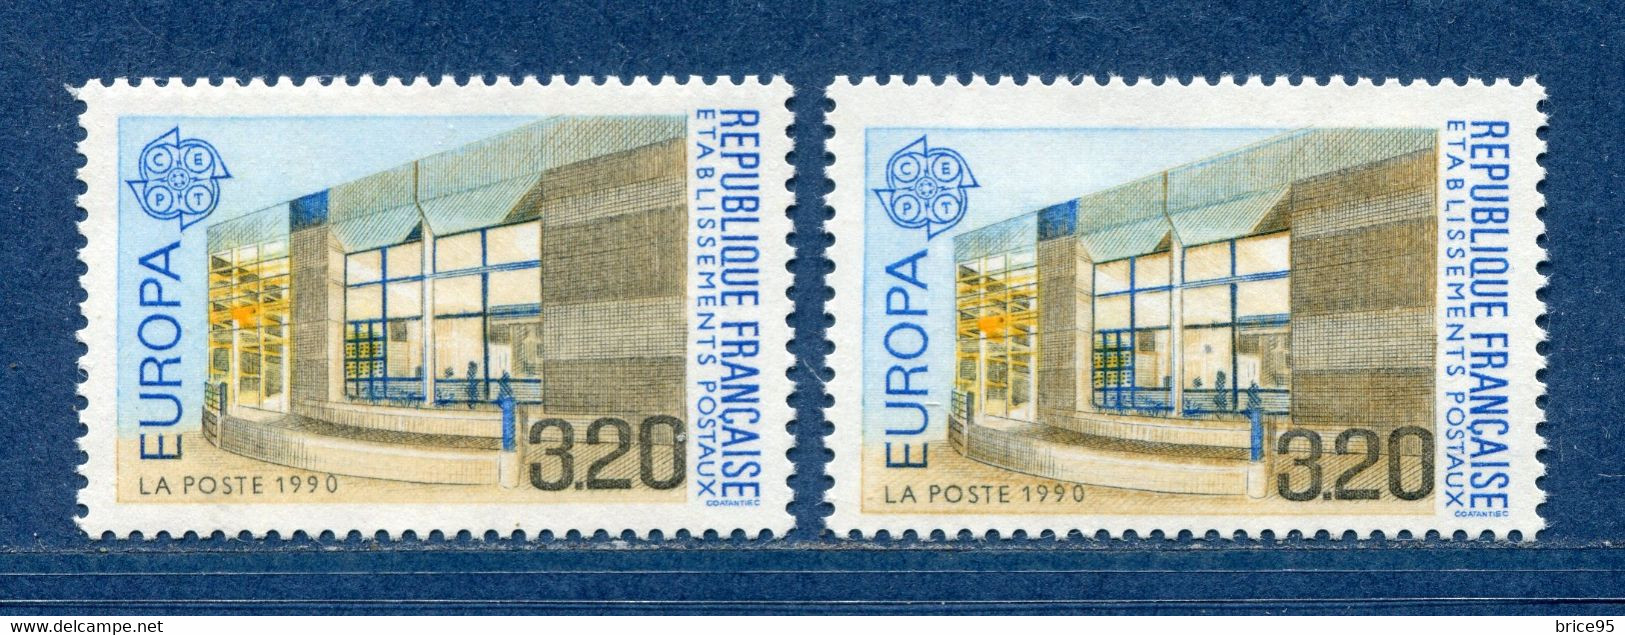 ⭐ France - Variété - YT N° 2643 - Couleurs - Pétouilles - Neuf Sans Charnière - 1990 ⭐ - Unused Stamps